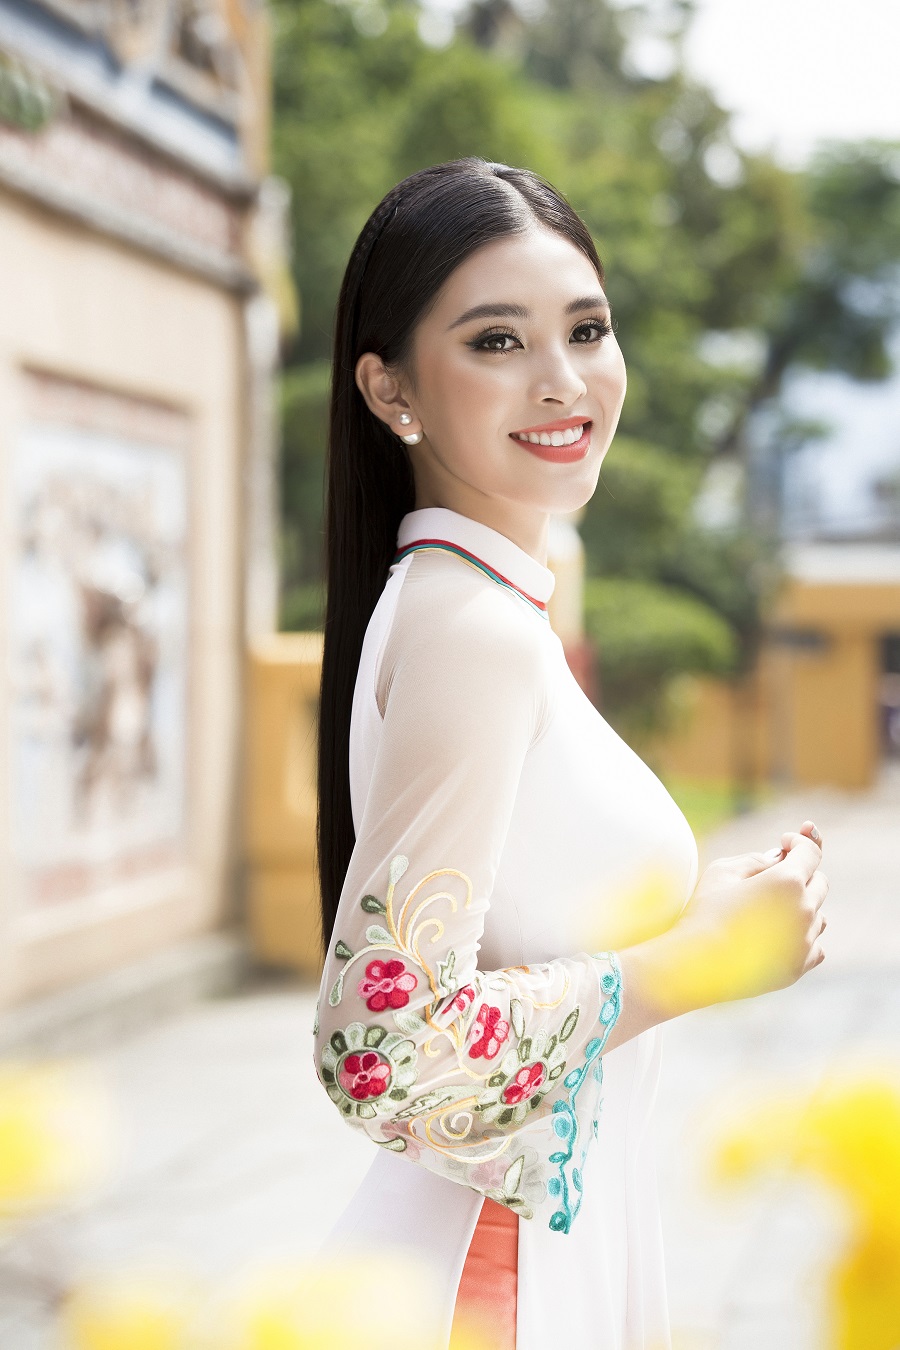 Vốn là người con của của vùng đất cổ kính Hội An, khoác lên thiết kế xuân lấy cảm hứng từ chính quê hương của mình, Tiểu Vy càng làm tôn lên đường nét duyên dáng của cô gái Việt trong tà áo dài truyền thống